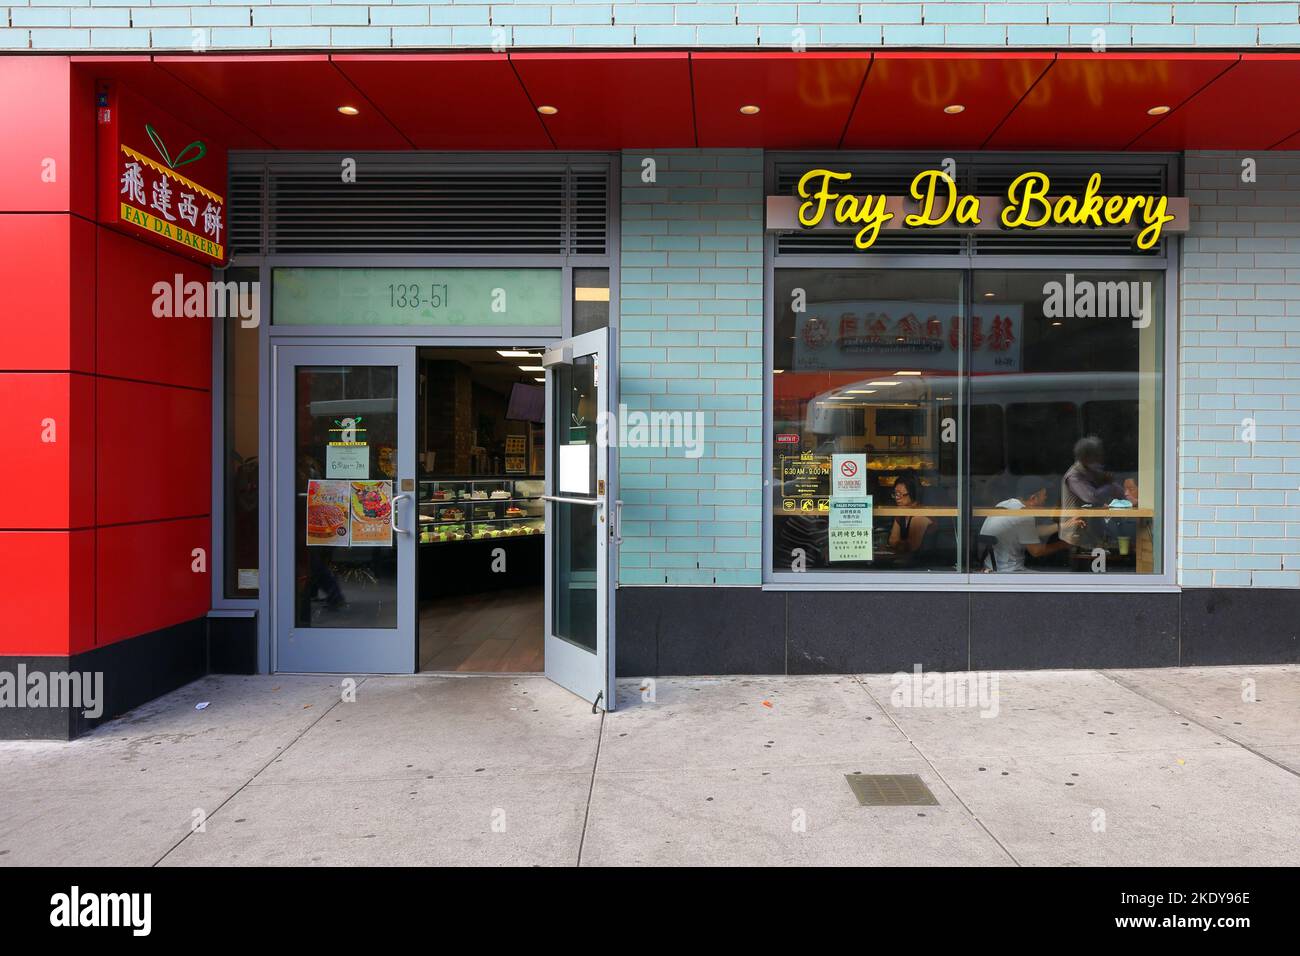 Fay Da Bakery, 133-55 41. Ave, Queens, New York, NYC Schaufensterfoto einer chinesischen Bäckerei-Kette in der Innenstadt von Flushing. Stockfoto